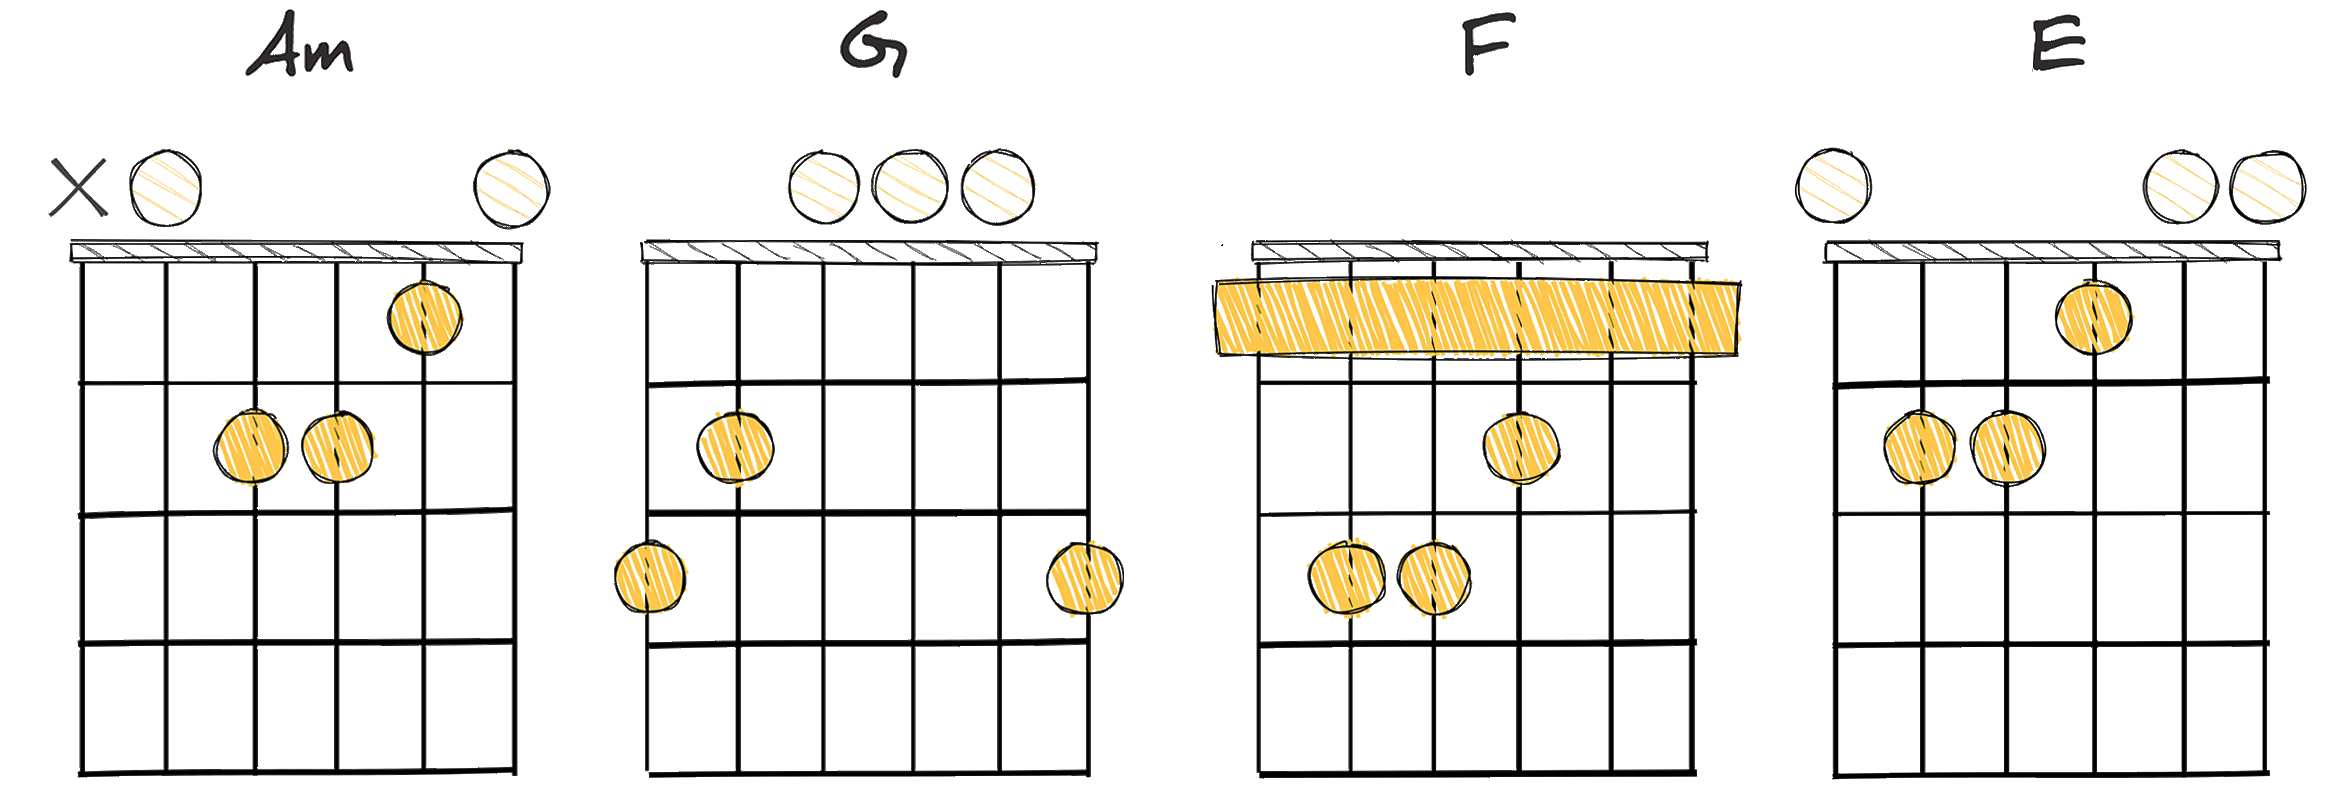 i - VII - VI - V (1 - 7 - 6 - 5) chords diagram